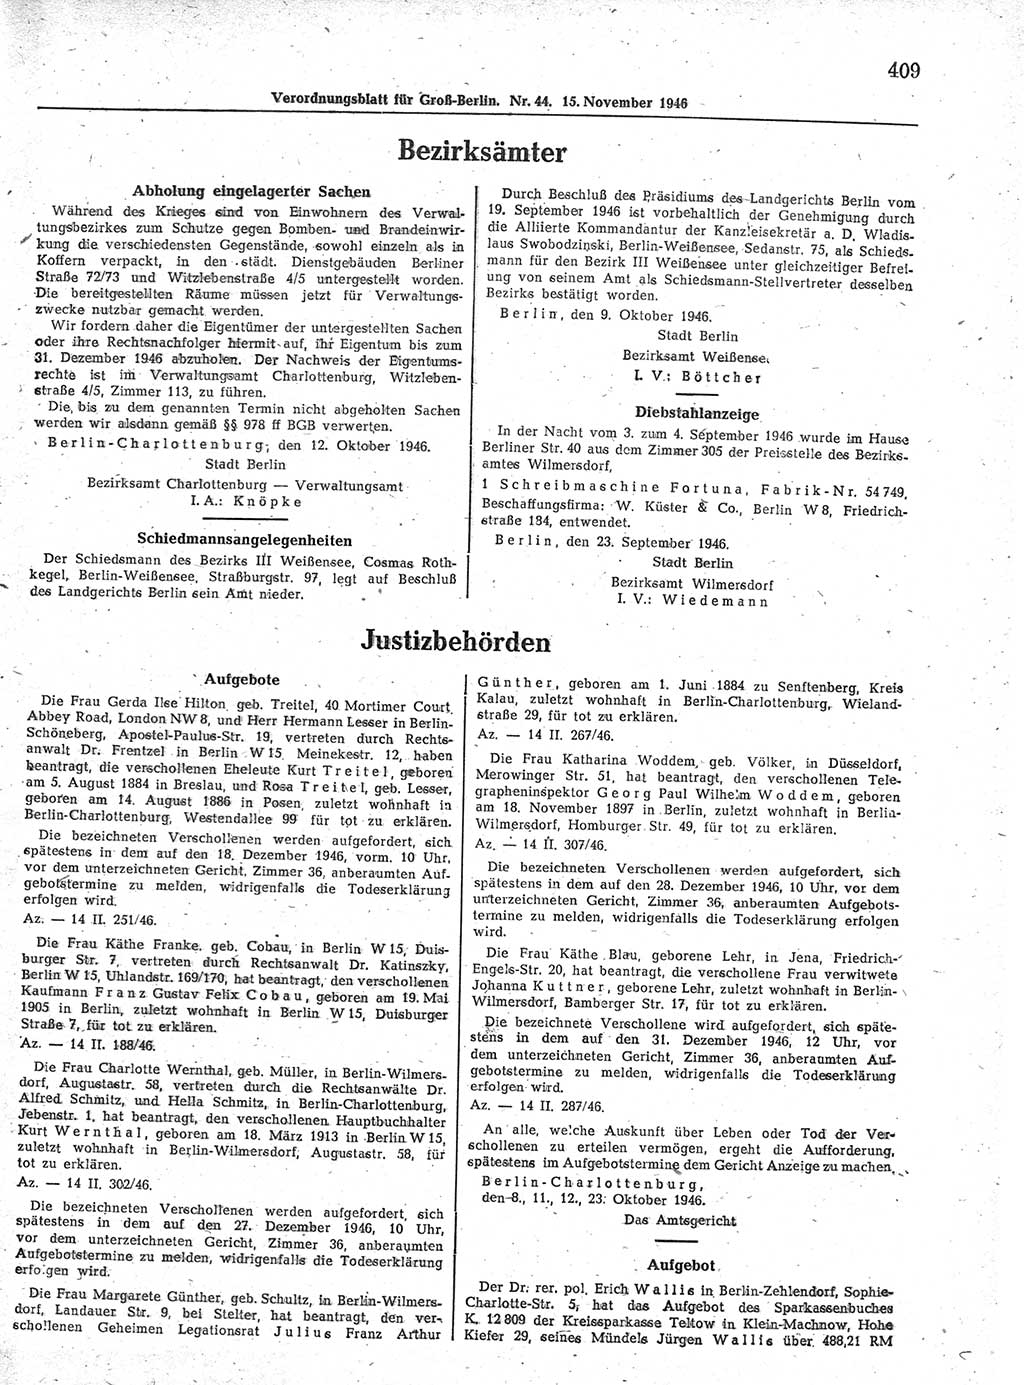 Verordnungsblatt (VOBl.) der Stadt Berlin, für Groß-Berlin 1946, Seite 409 (VOBl. Bln. 1946, S. 409)